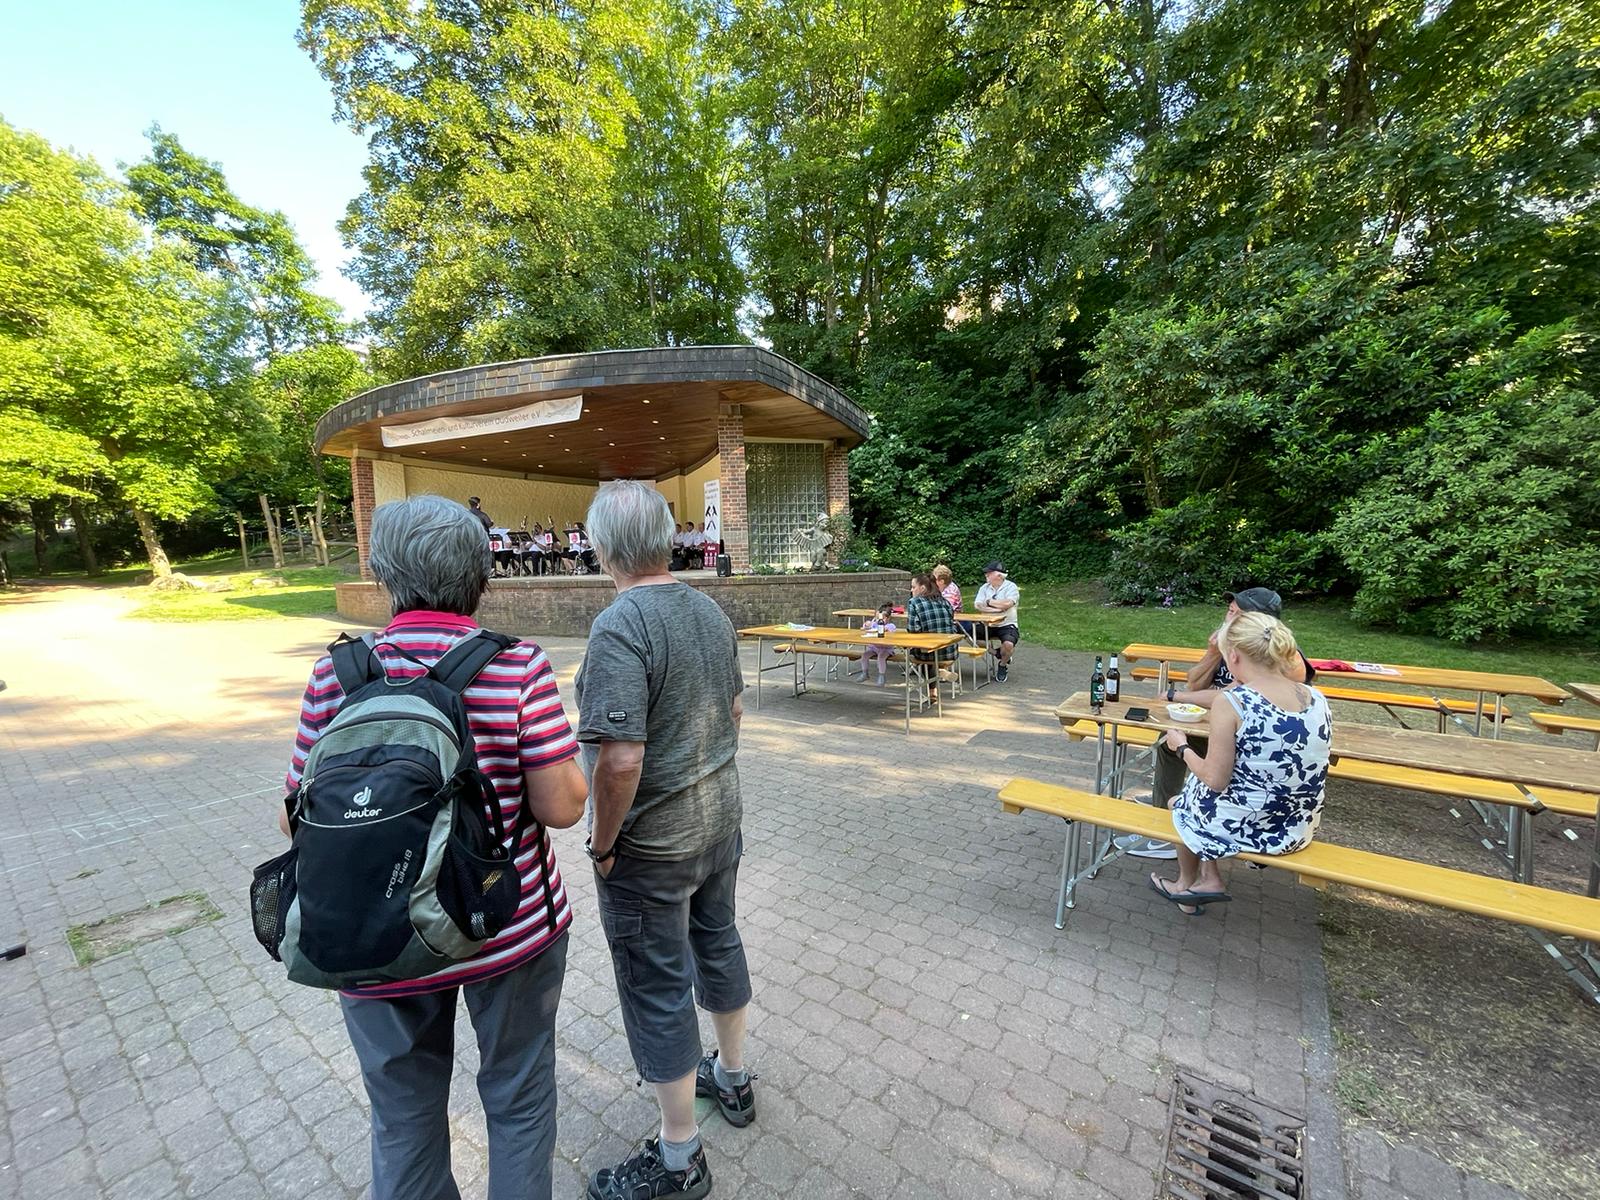 Foto im Stadtpark, man sieht den Pavillon, ein paar Bierzeltgarnituren an denen Menschen sitzen und im Vordergrund zwei Menschen von hinten, die zur Bühne schauen.